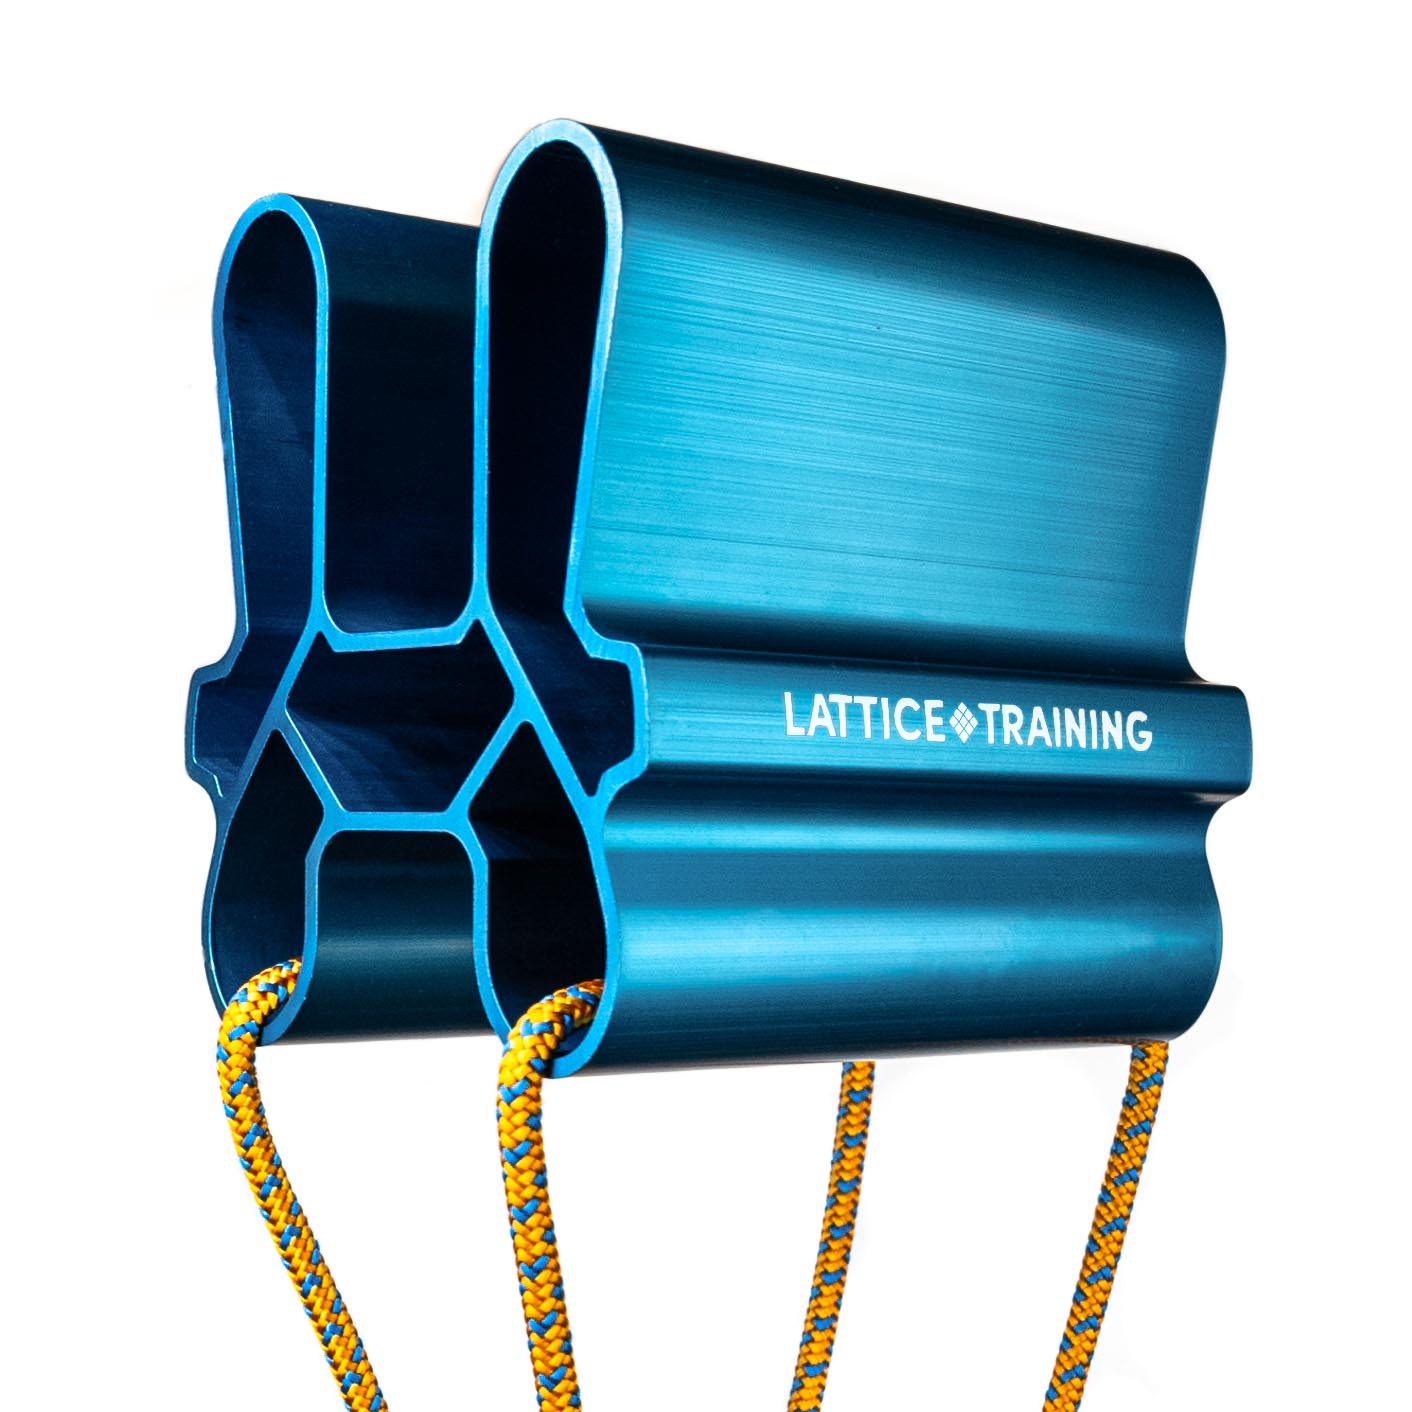 Lattice quad-block for grip strength testing